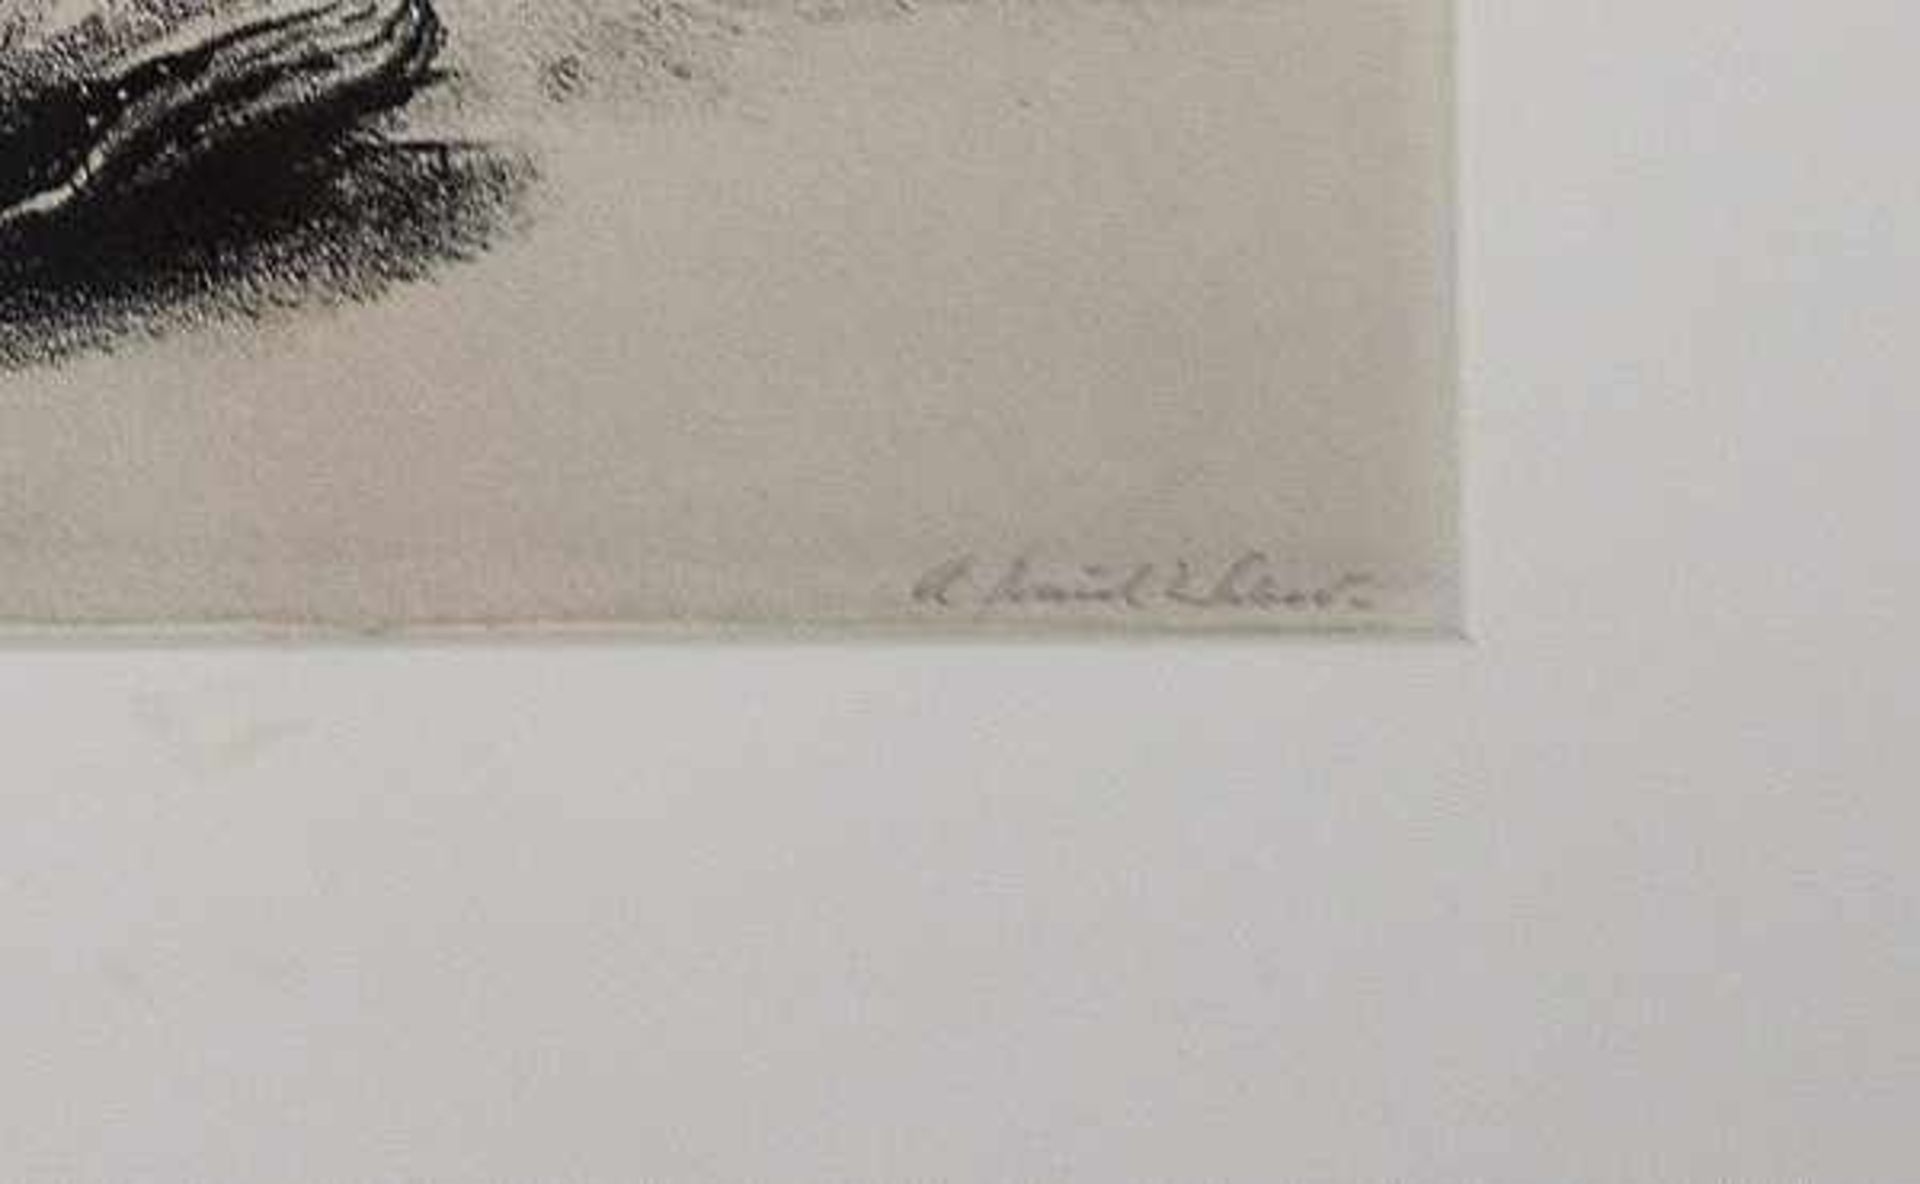 WEBER Andreas Paul (1893 Arnstadt - 1980 Schretstaken) "Maus auf einem Berg von Schuhen", Litho in - Bild 3 aus 3